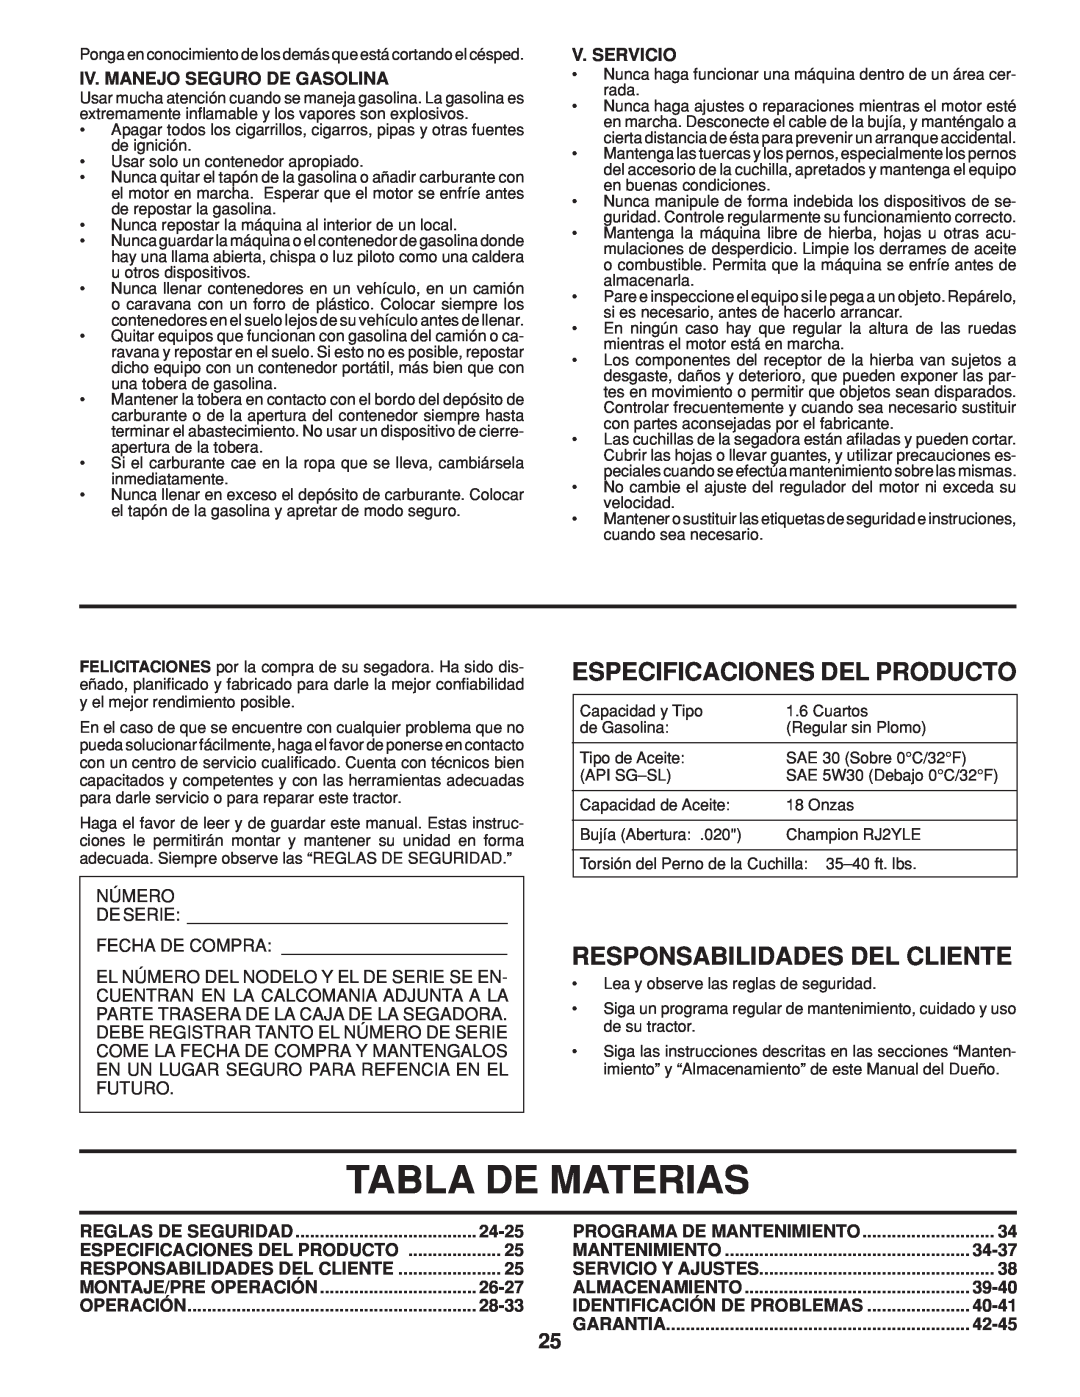 Husqvarna 961430104 Tabla De Materias, Especificaciones Del Producto, Responsabilidades Del Cliente, V. Servicio, 24-25 